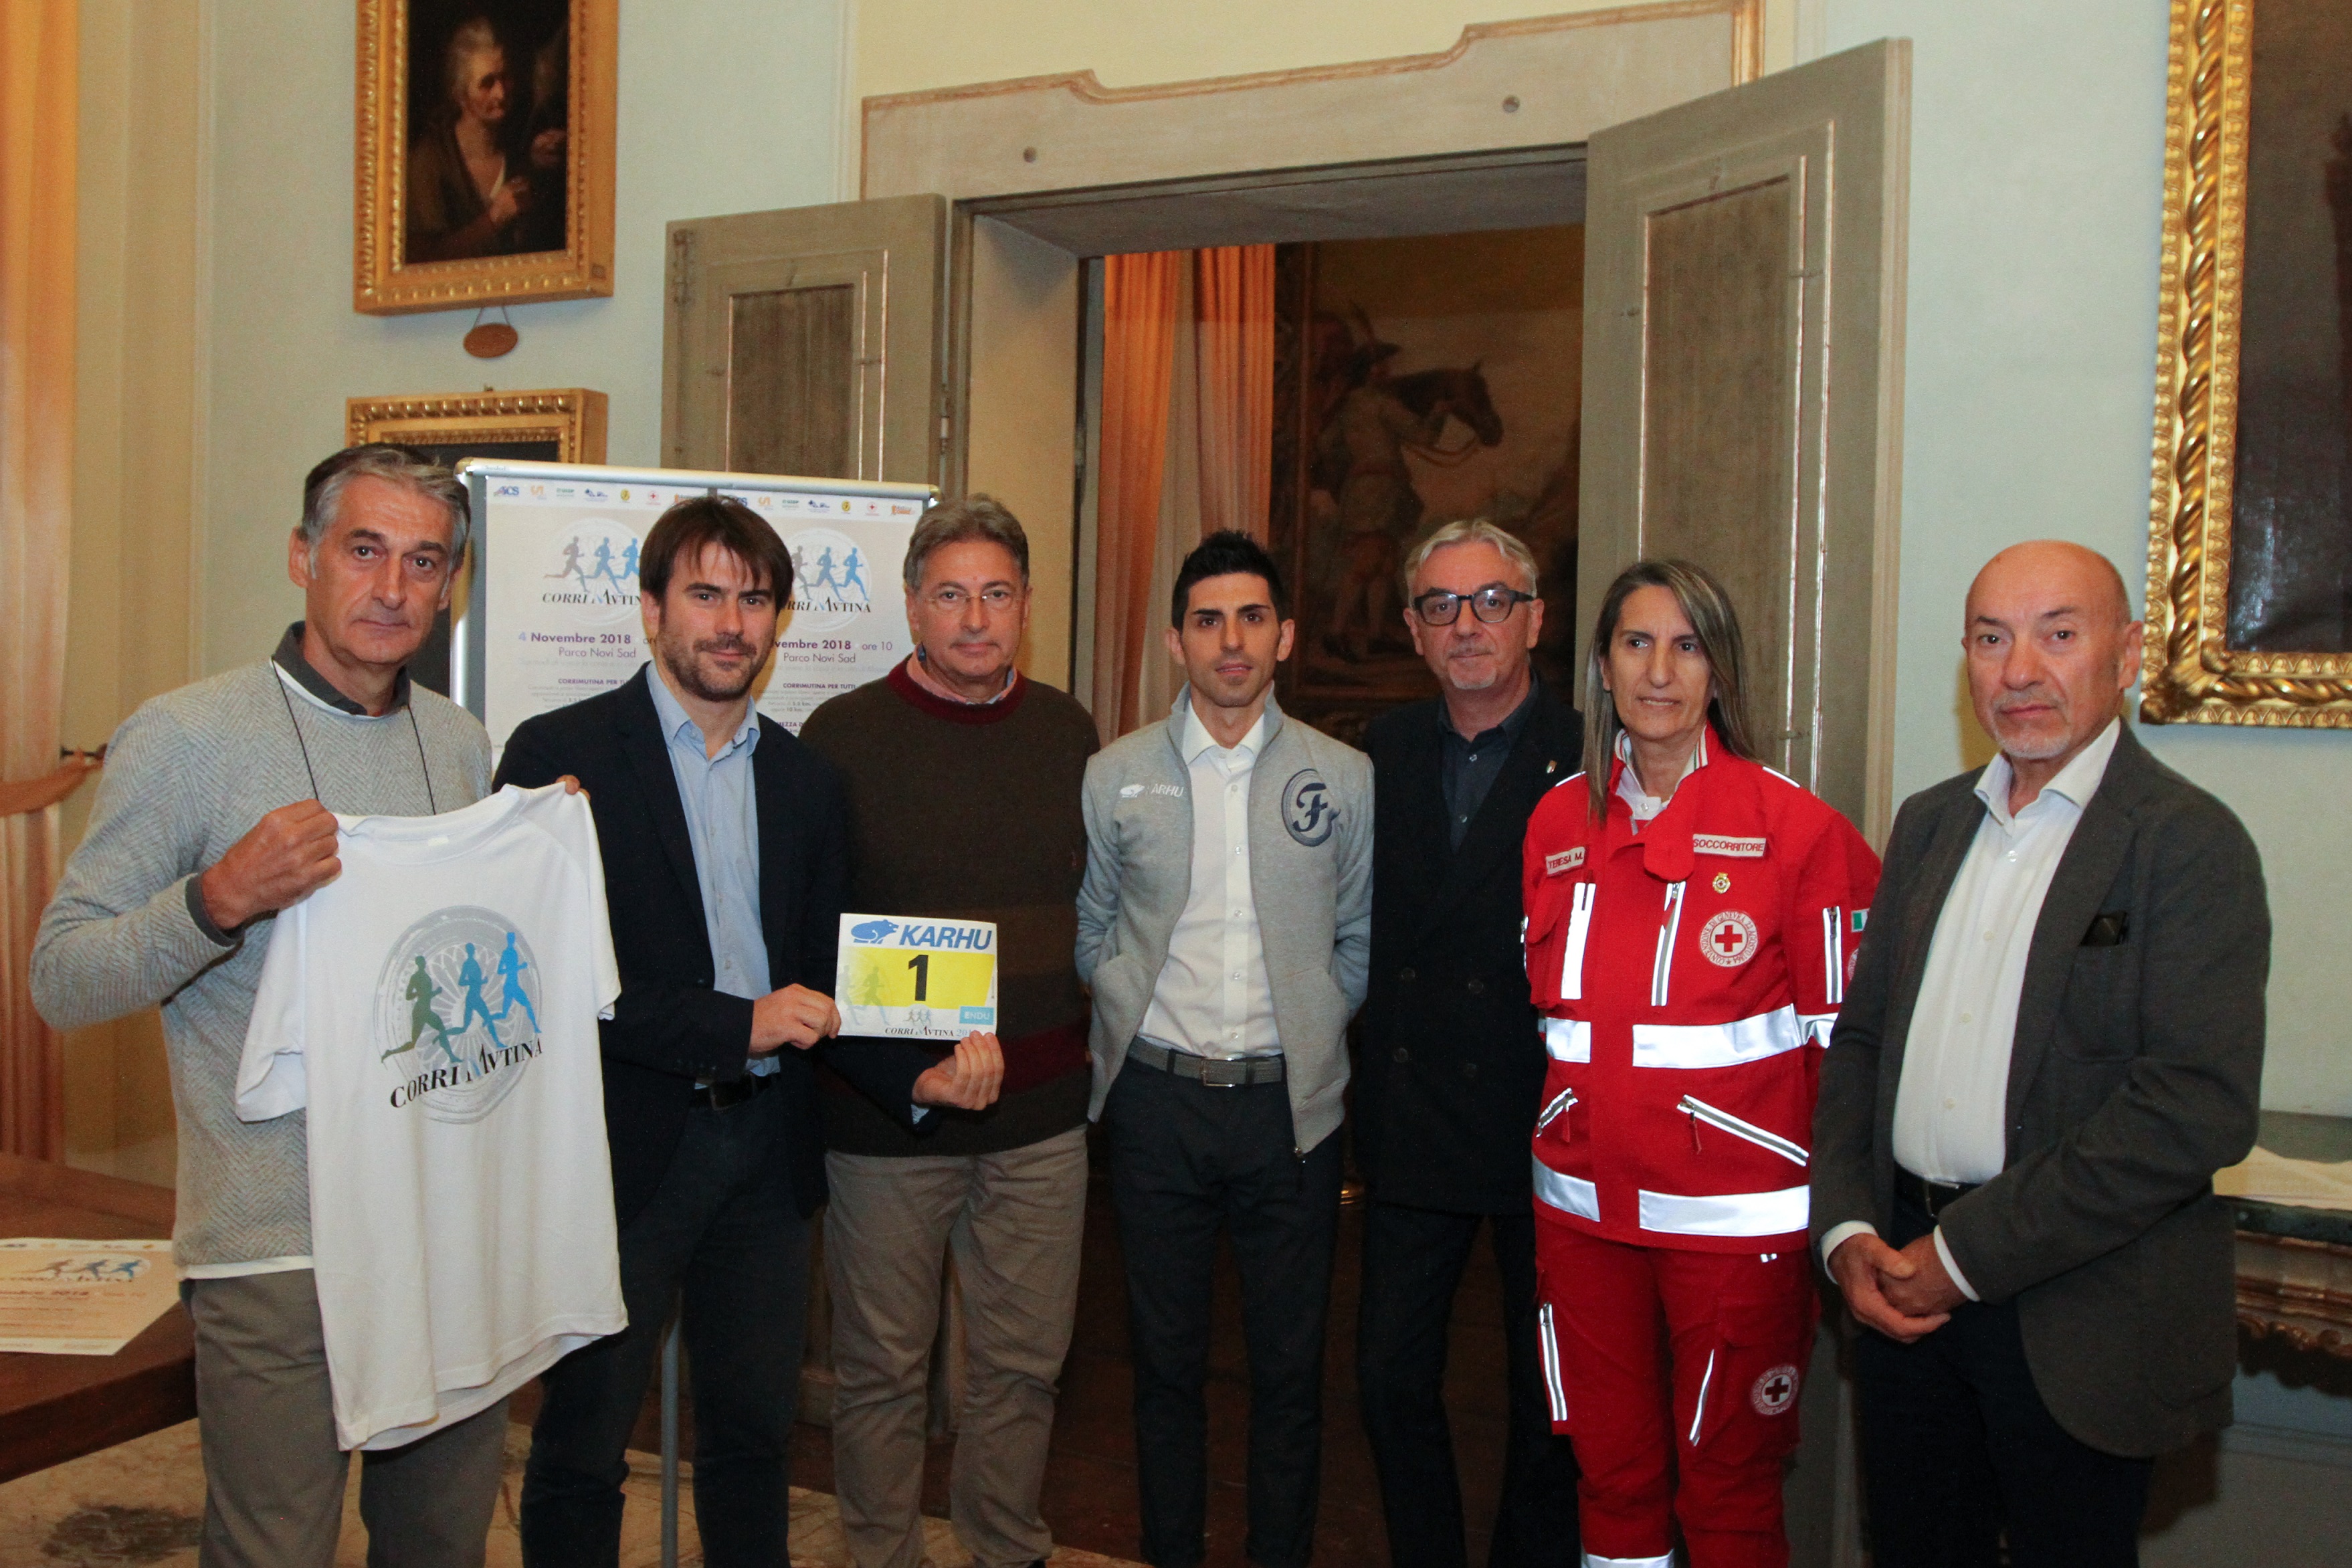 CorriMutina 2018, l'assessore allo Sport Guerzoni con i rappresentanti del comitato organizzatore